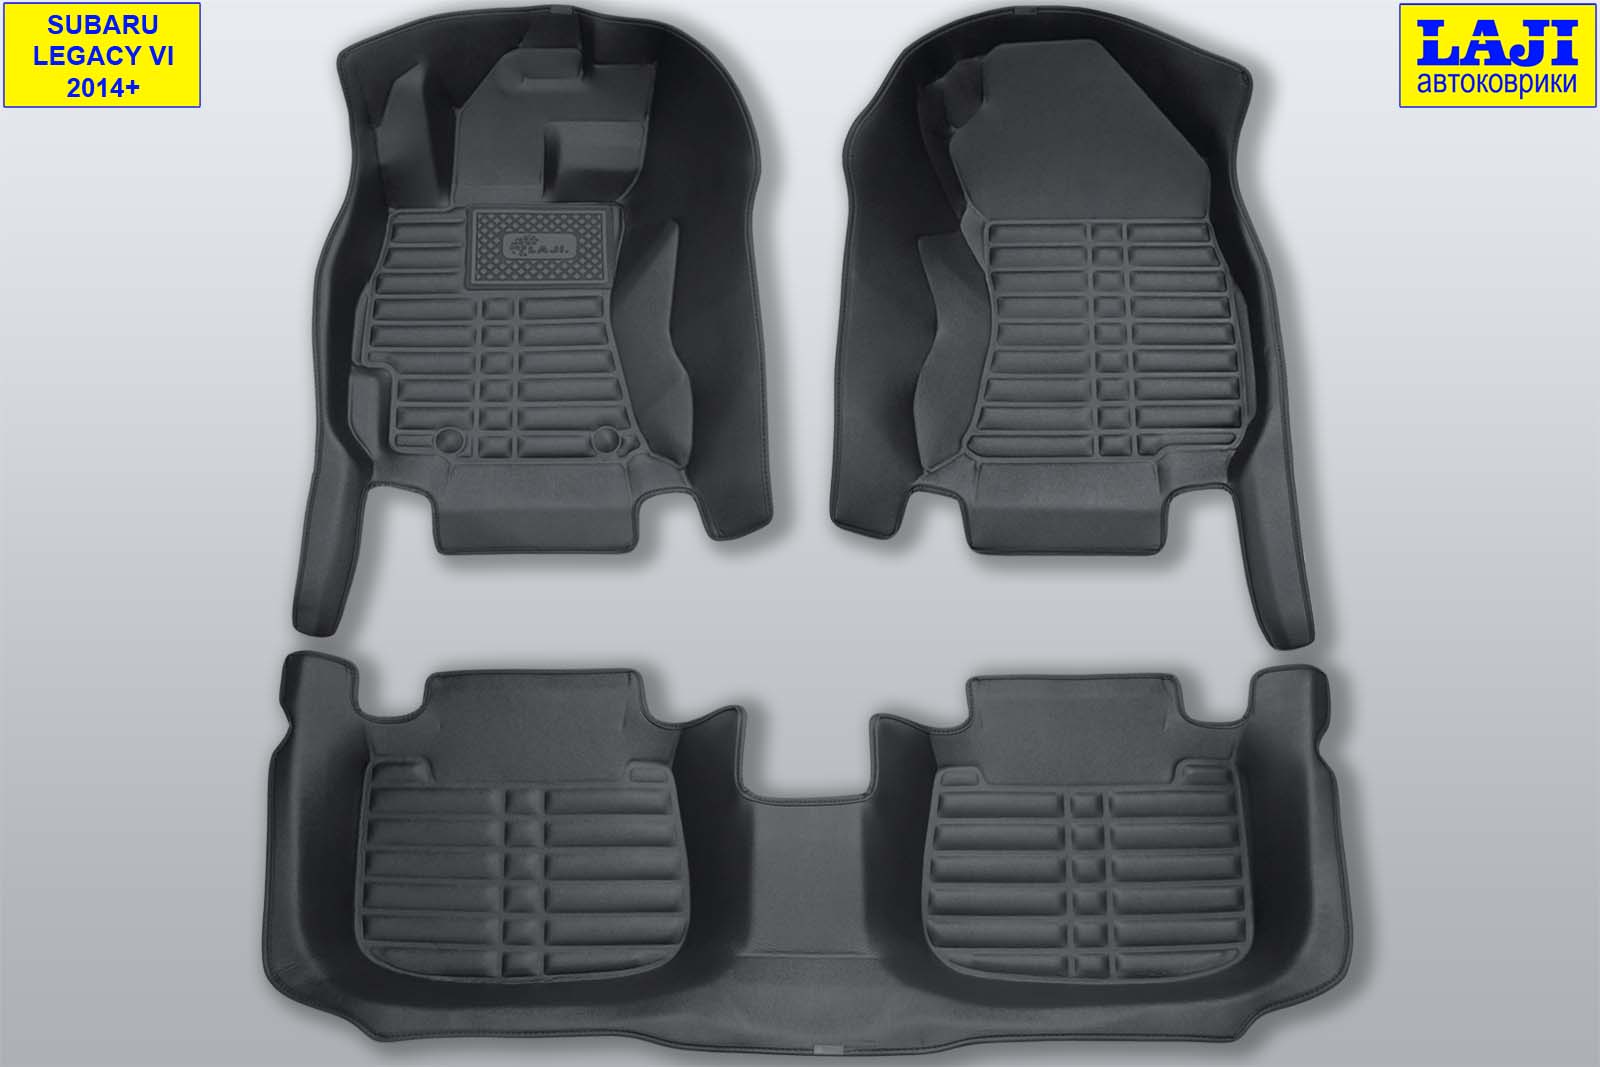 5D коврики для Subaru Legacy 6, 2014+